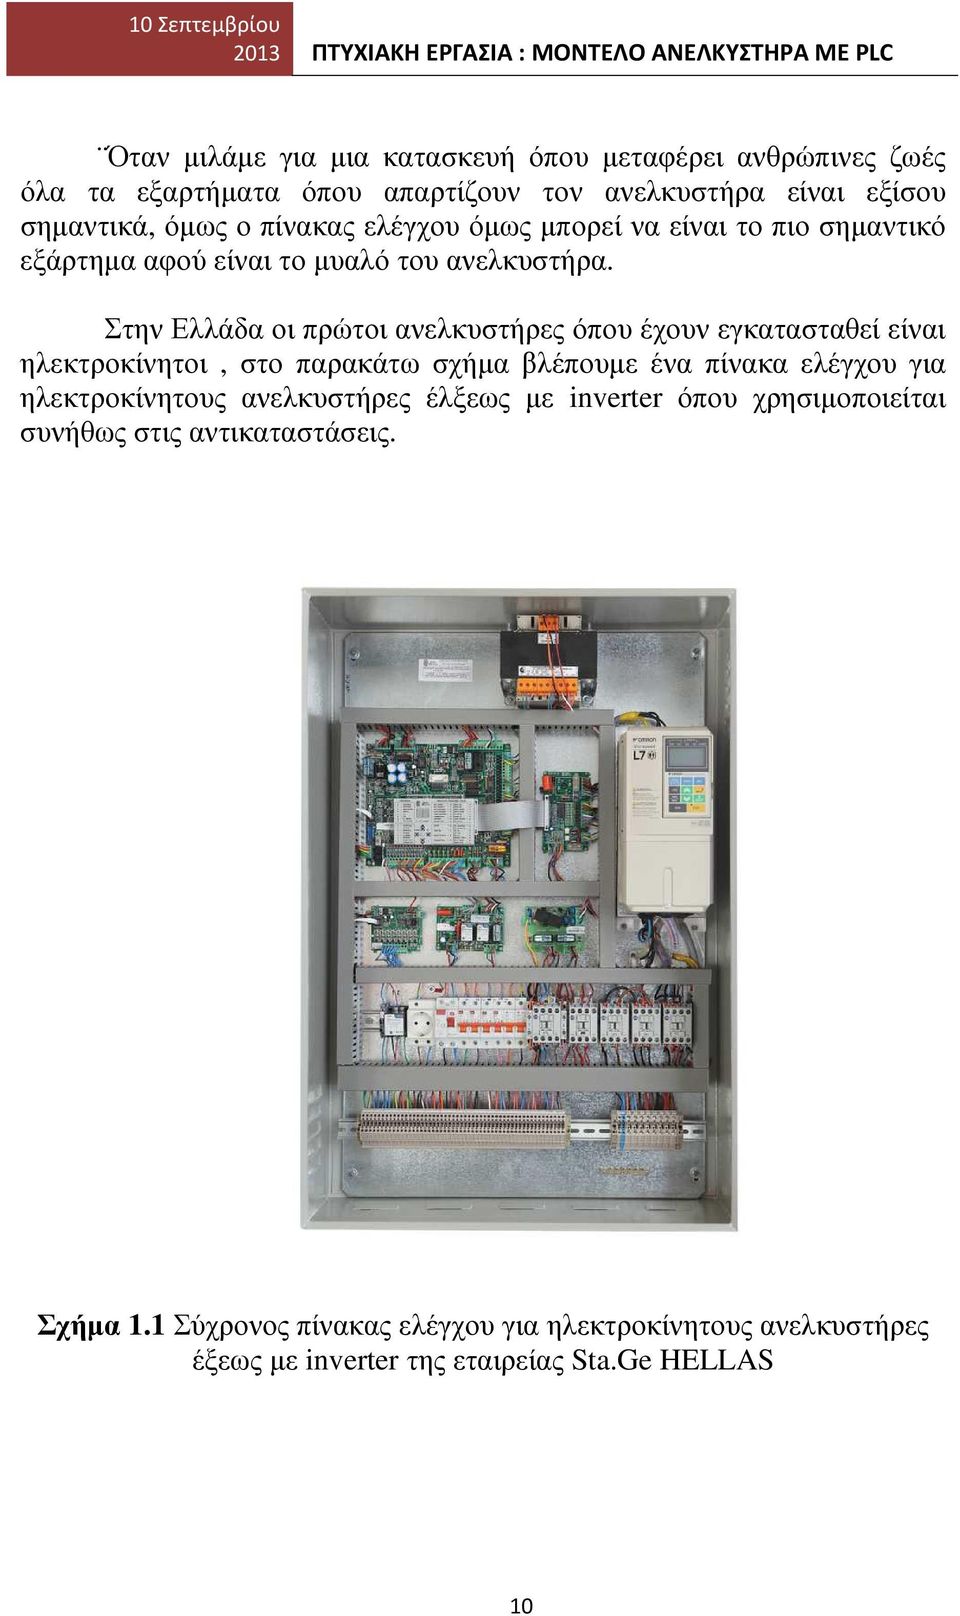 Στην Ελλάδα οι πρώτοι ανελκυστήρες όπου έχουν εγκατασταθεί είναι ηλεκτροκίνητοι, στο παρακάτω σχήµα βλέπουµε ένα πίνακα ελέγχου για ηλεκτροκίνητους ανελκυστήρες